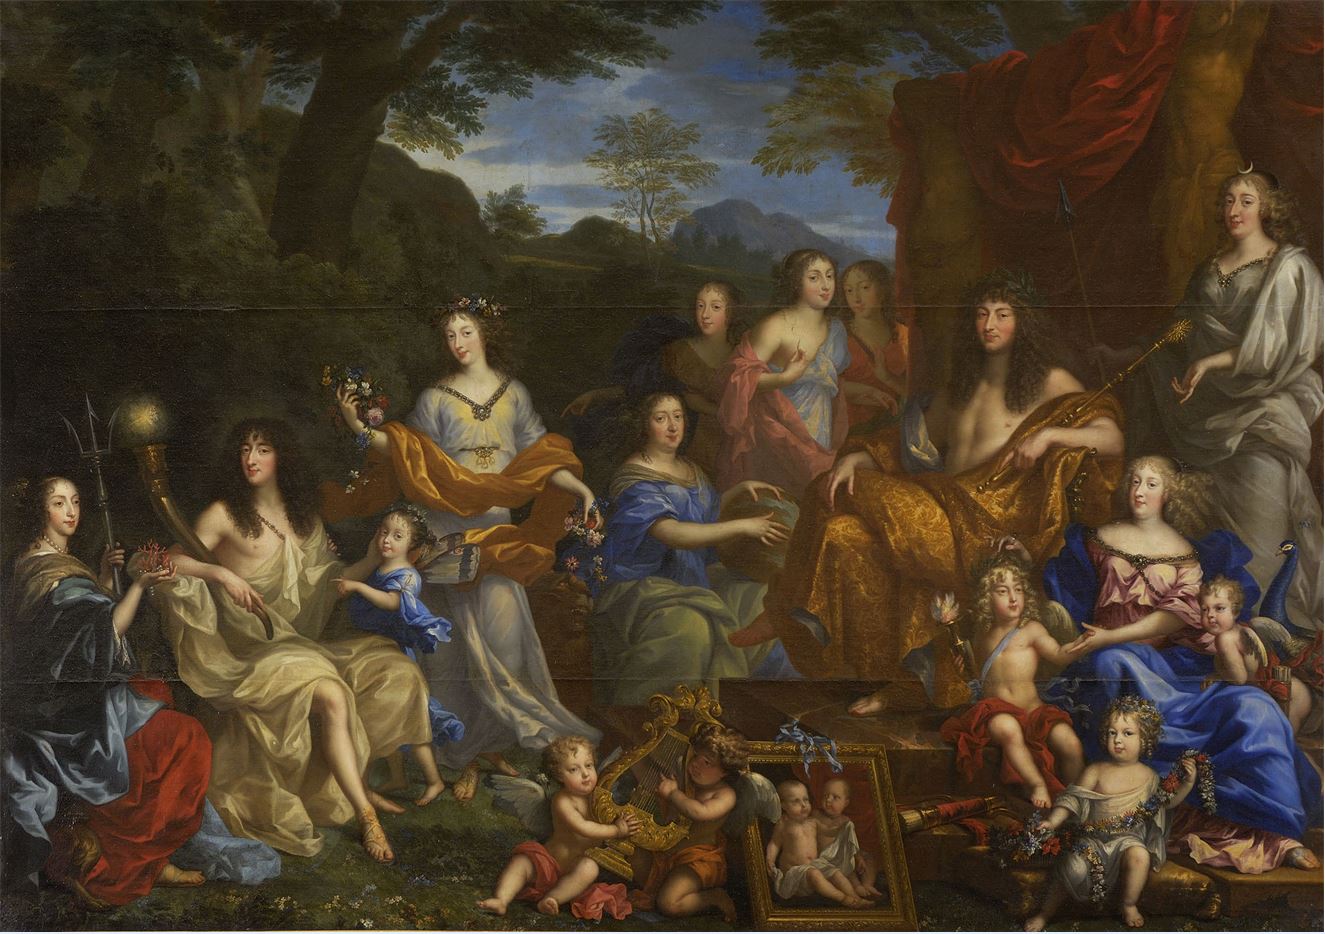 L'image montre le Portrait mythologique de la famille de Louis XIV par Nocret